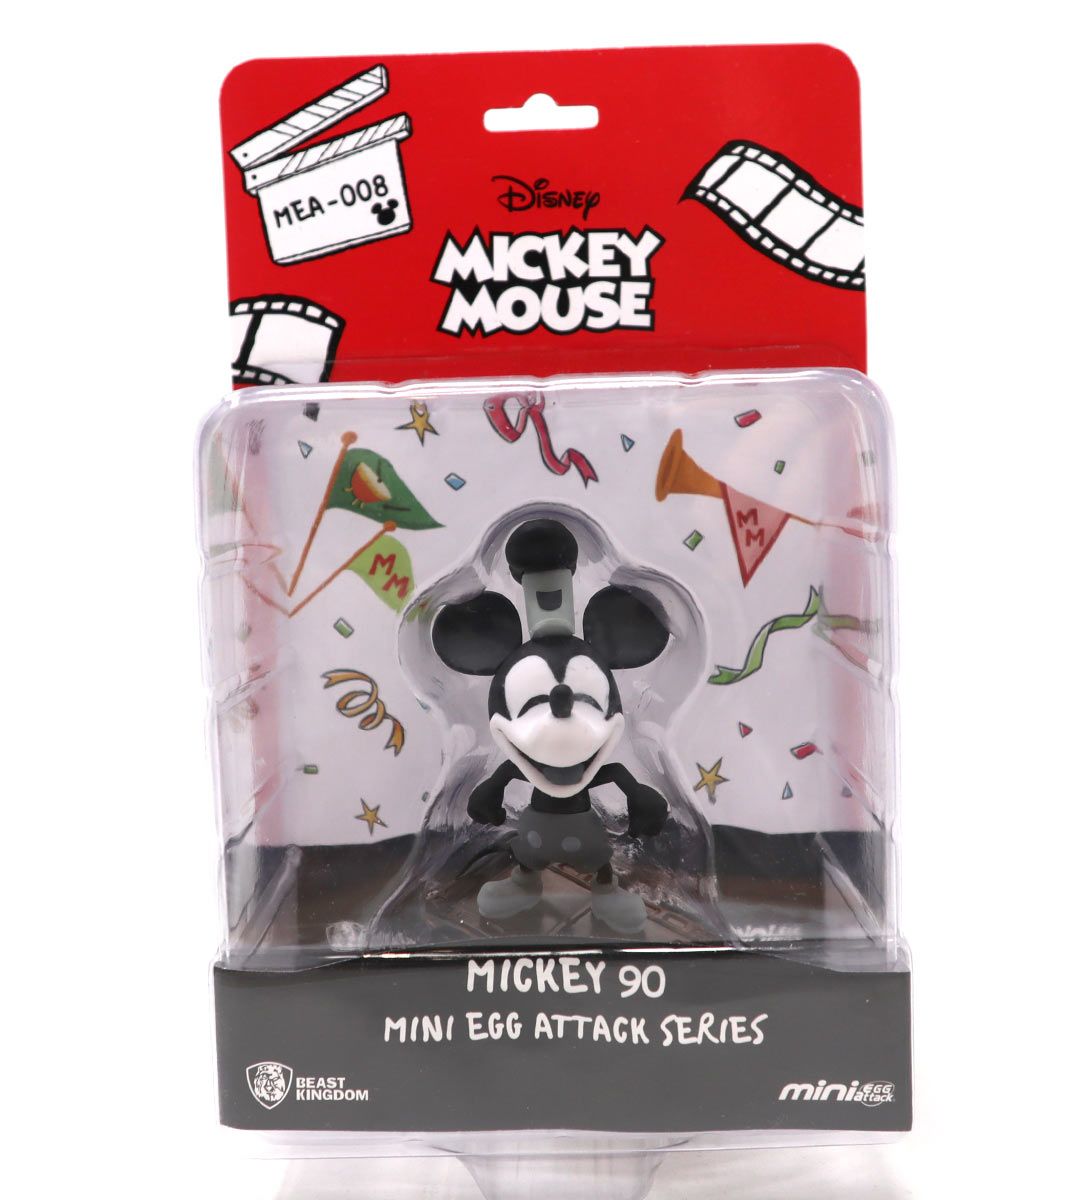 Serie de ataque de mini huevo - Steamboat Willie Mickey 90 (Mickey Mouse)